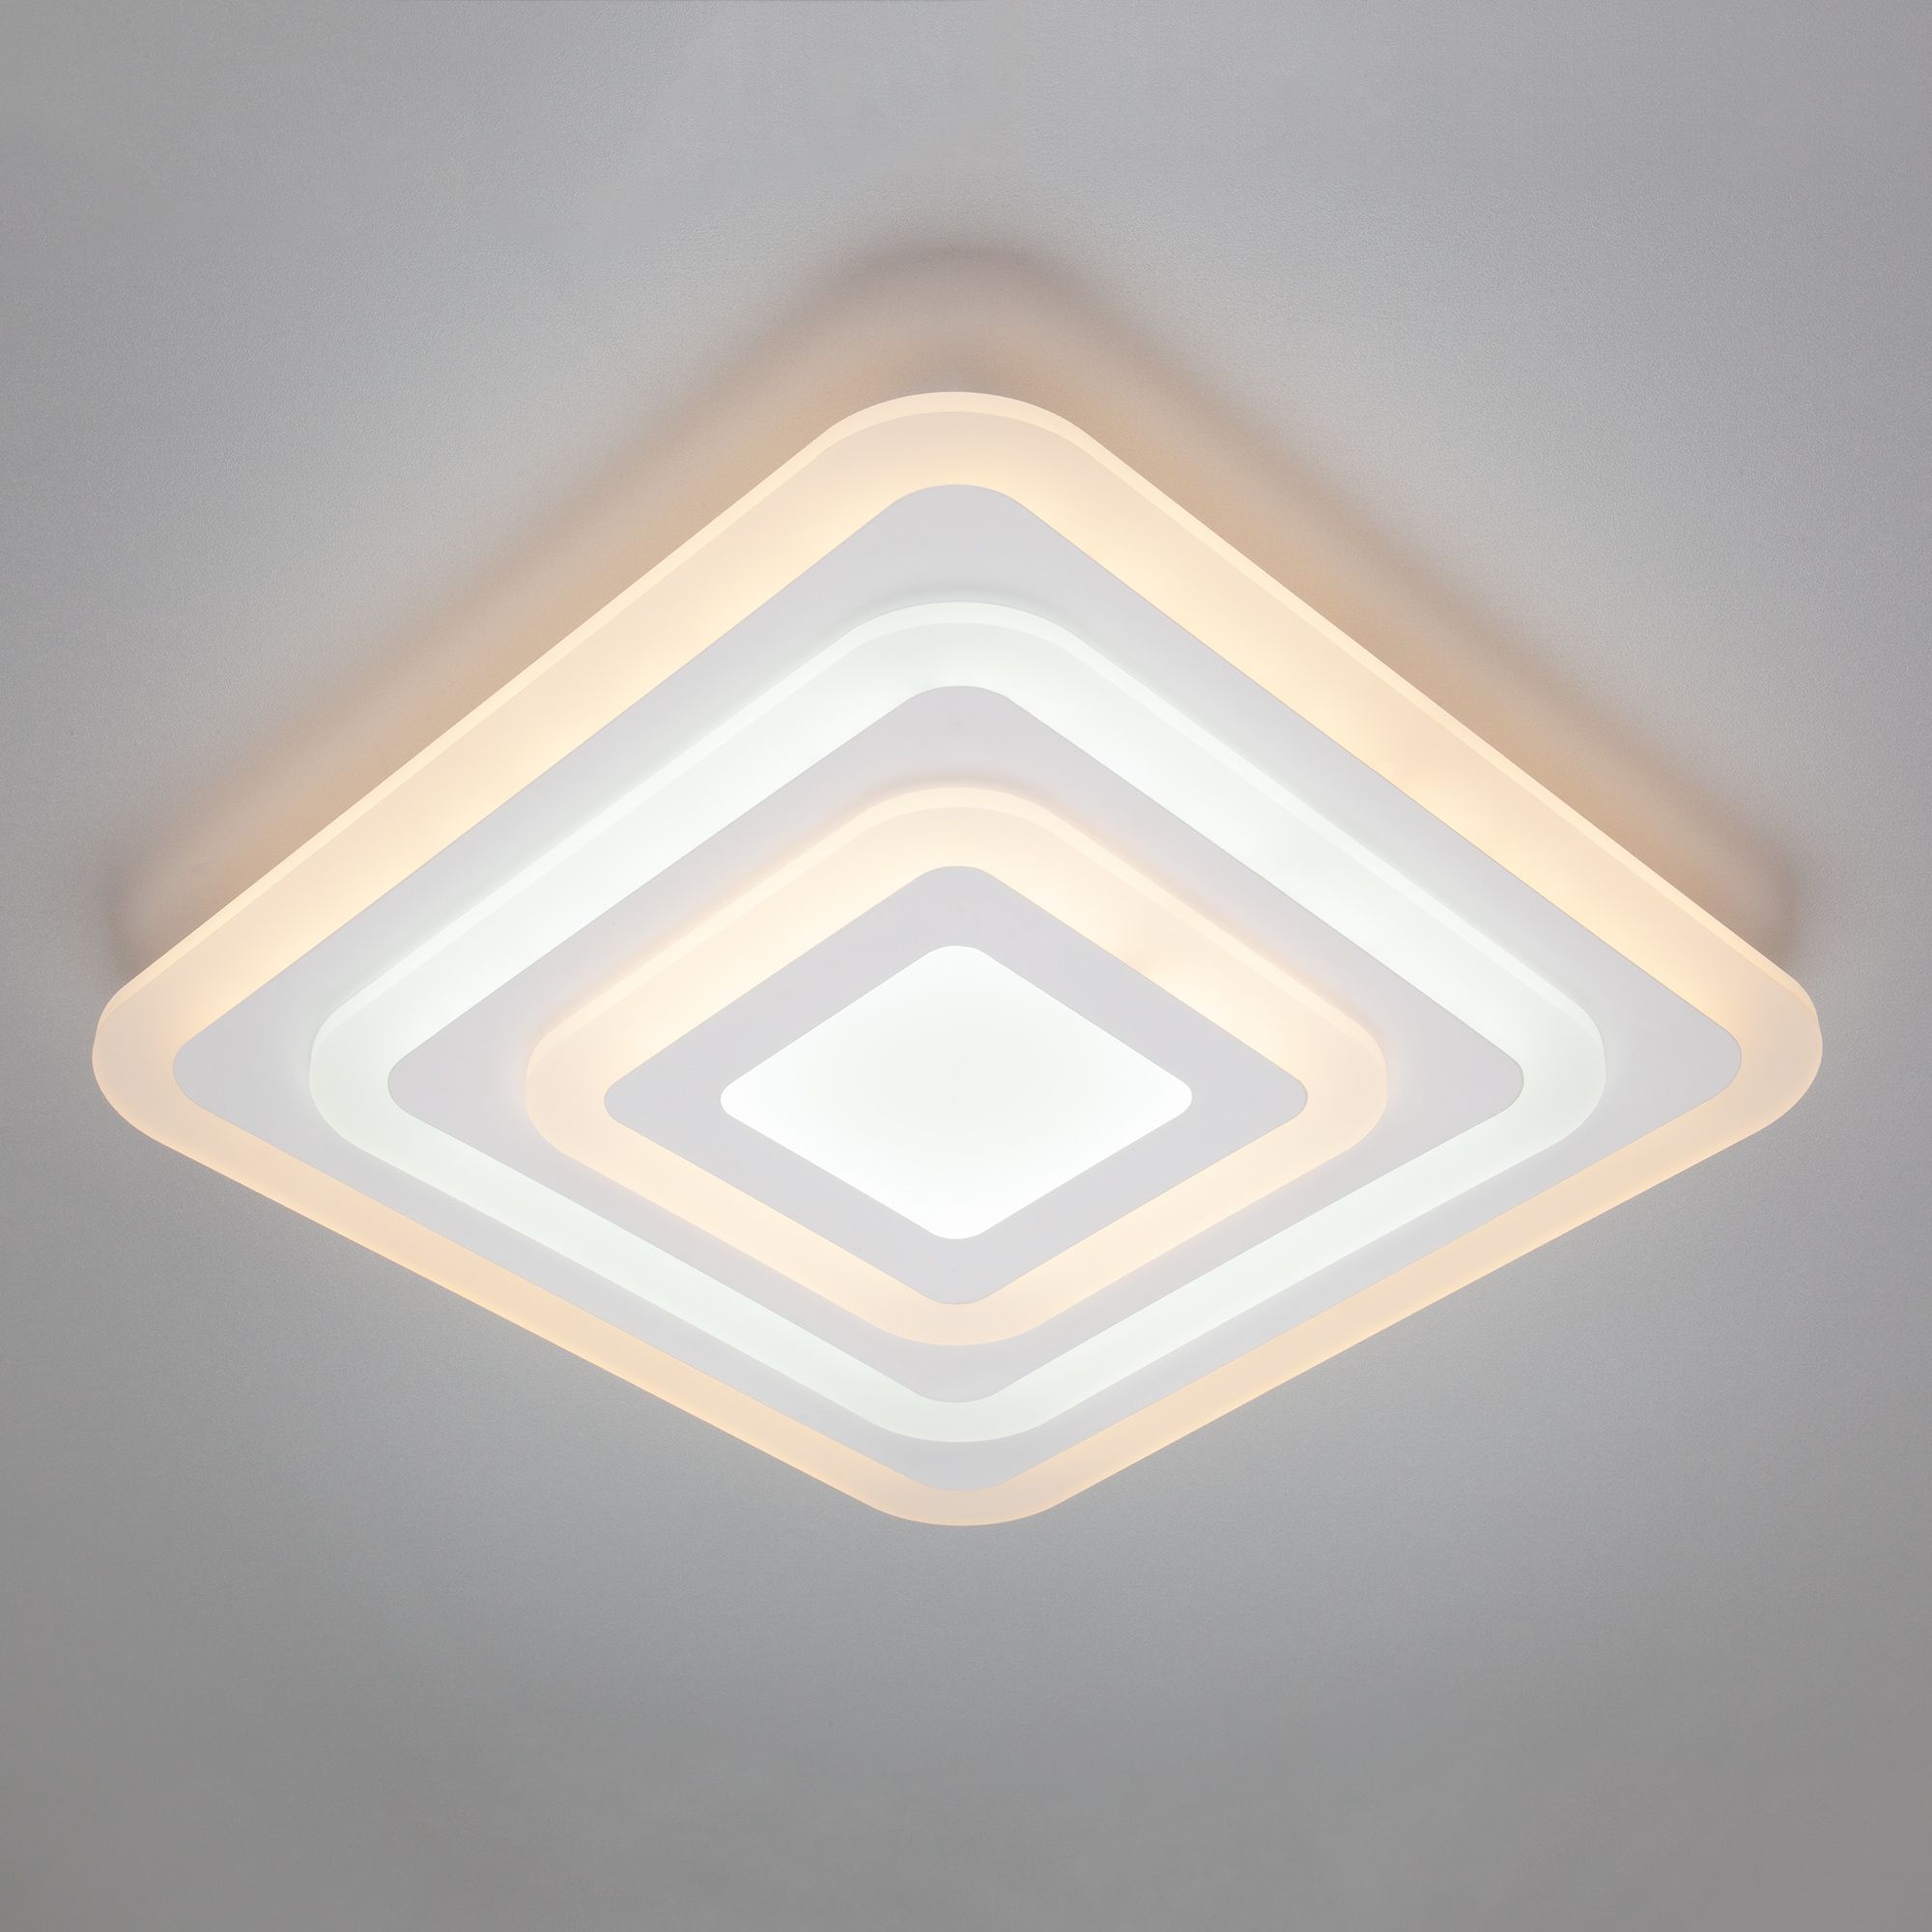 Квадратный потолочный светильник с пультом  Siluet 90118/1 белый. Фото 1